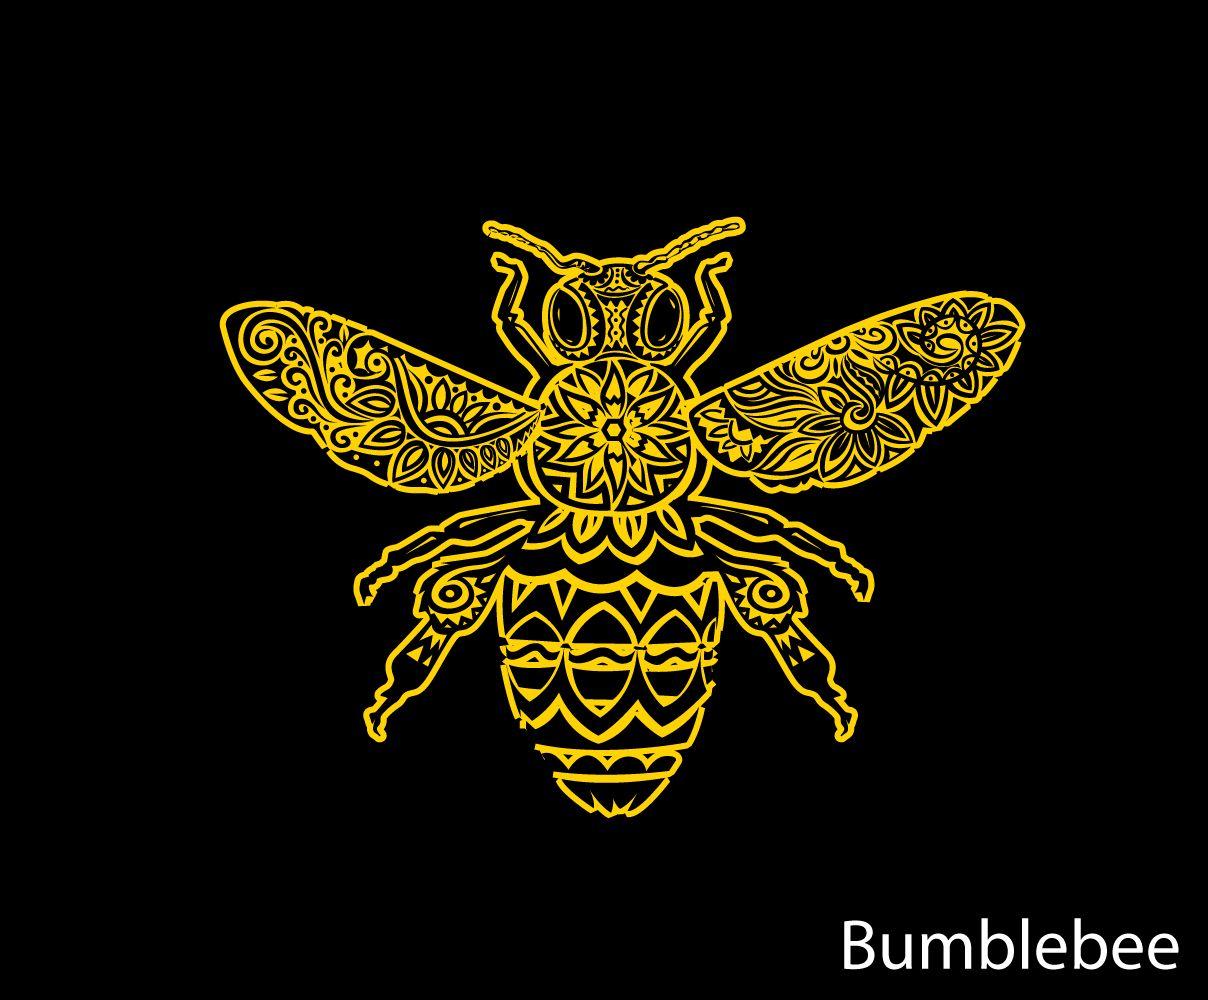 Bumblebee Logo - Skydiving Photographer Needs a Bumblebee logo Logo Designs